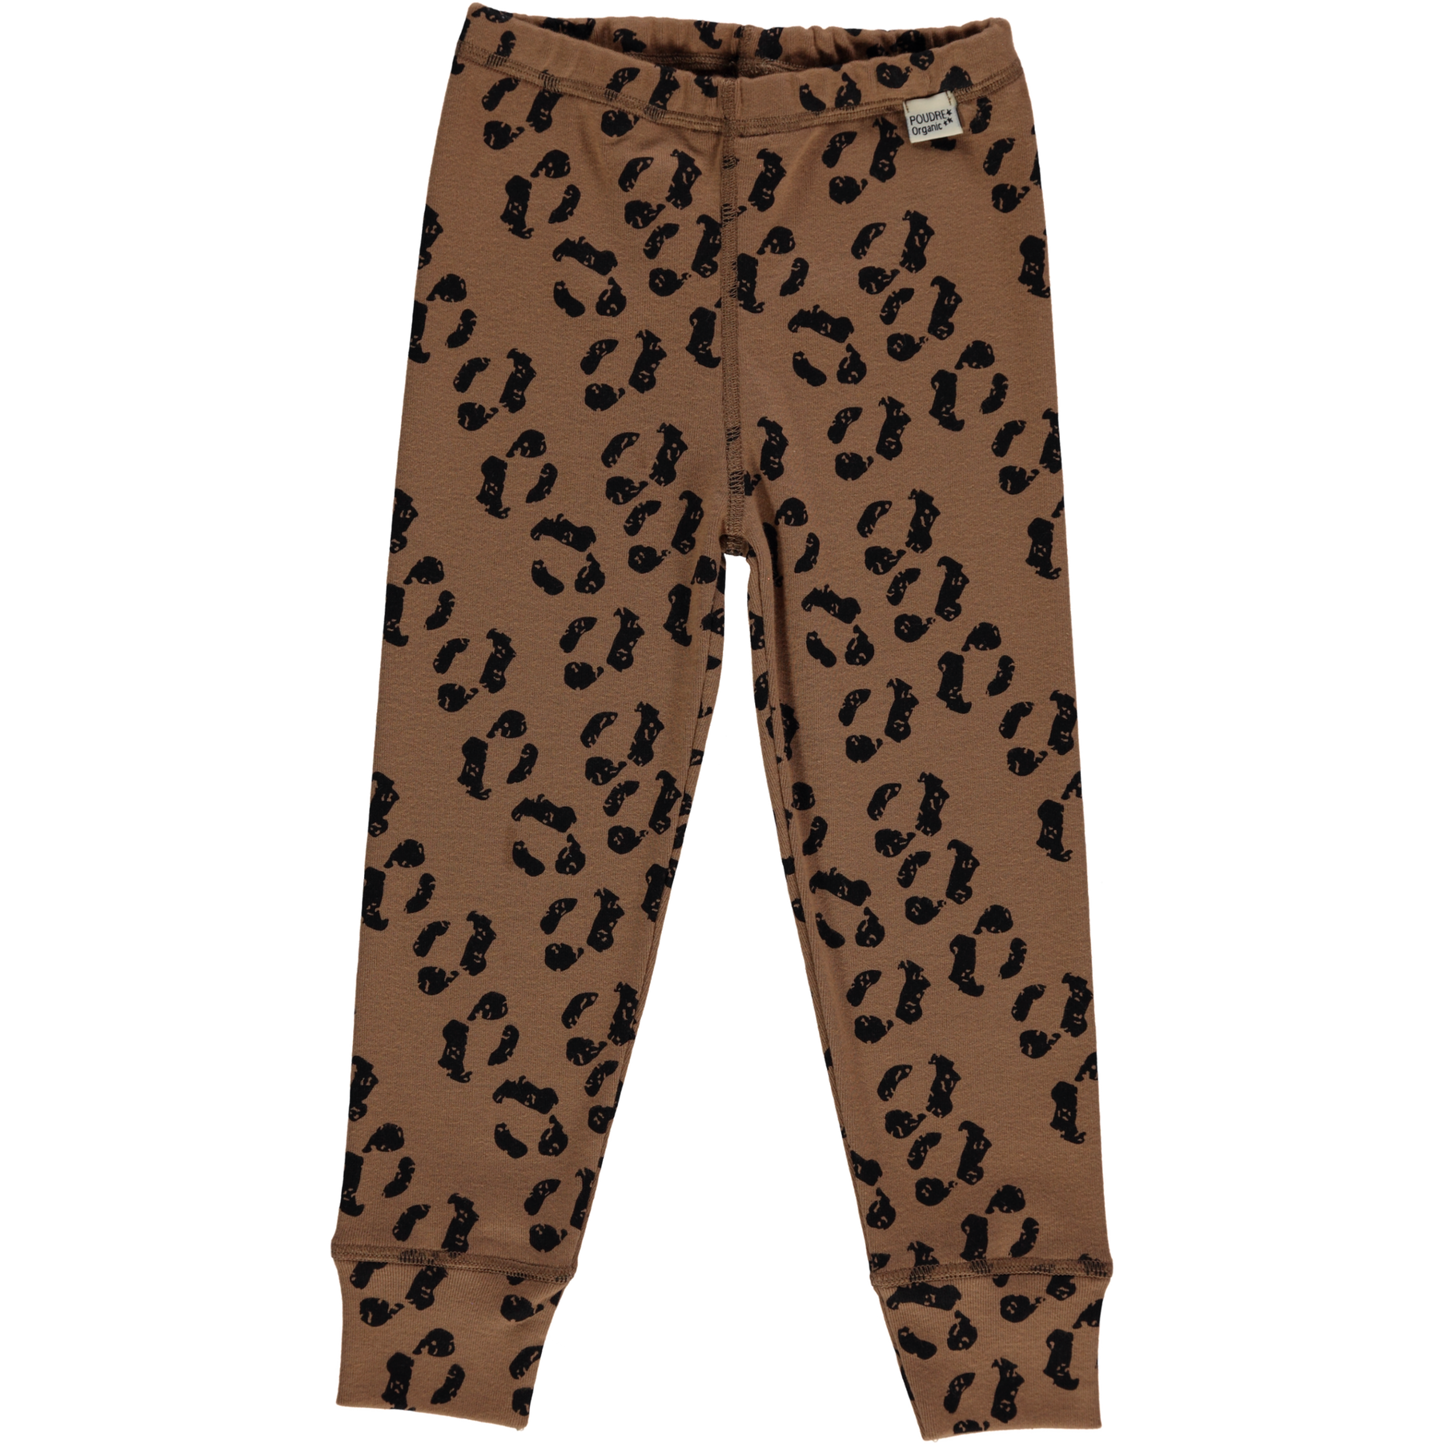 Leggings Basilic en Coton Biologique, Leopard